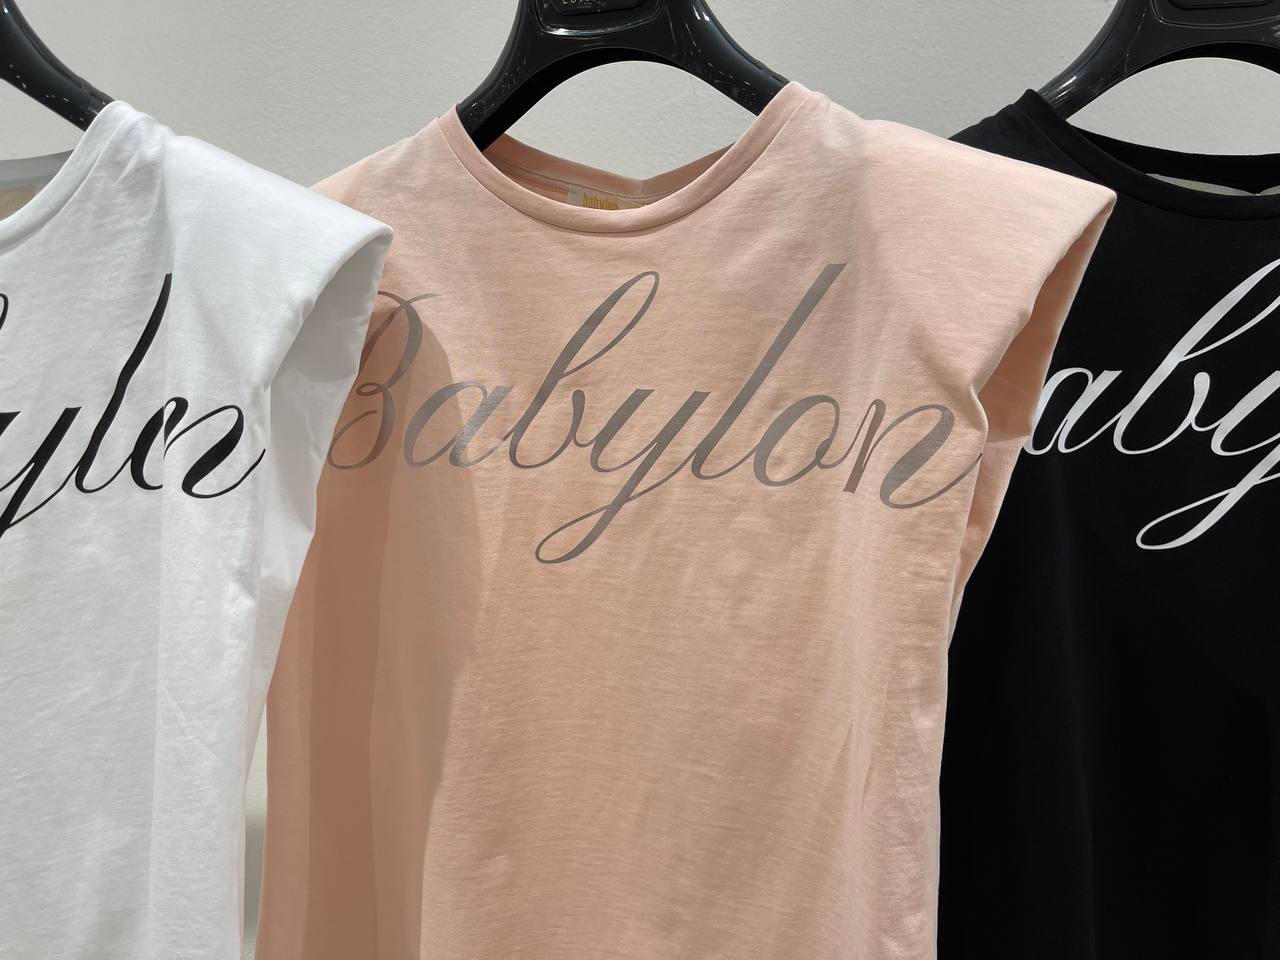 Итальянская одежда, бренд Babylon, арт. 73262357